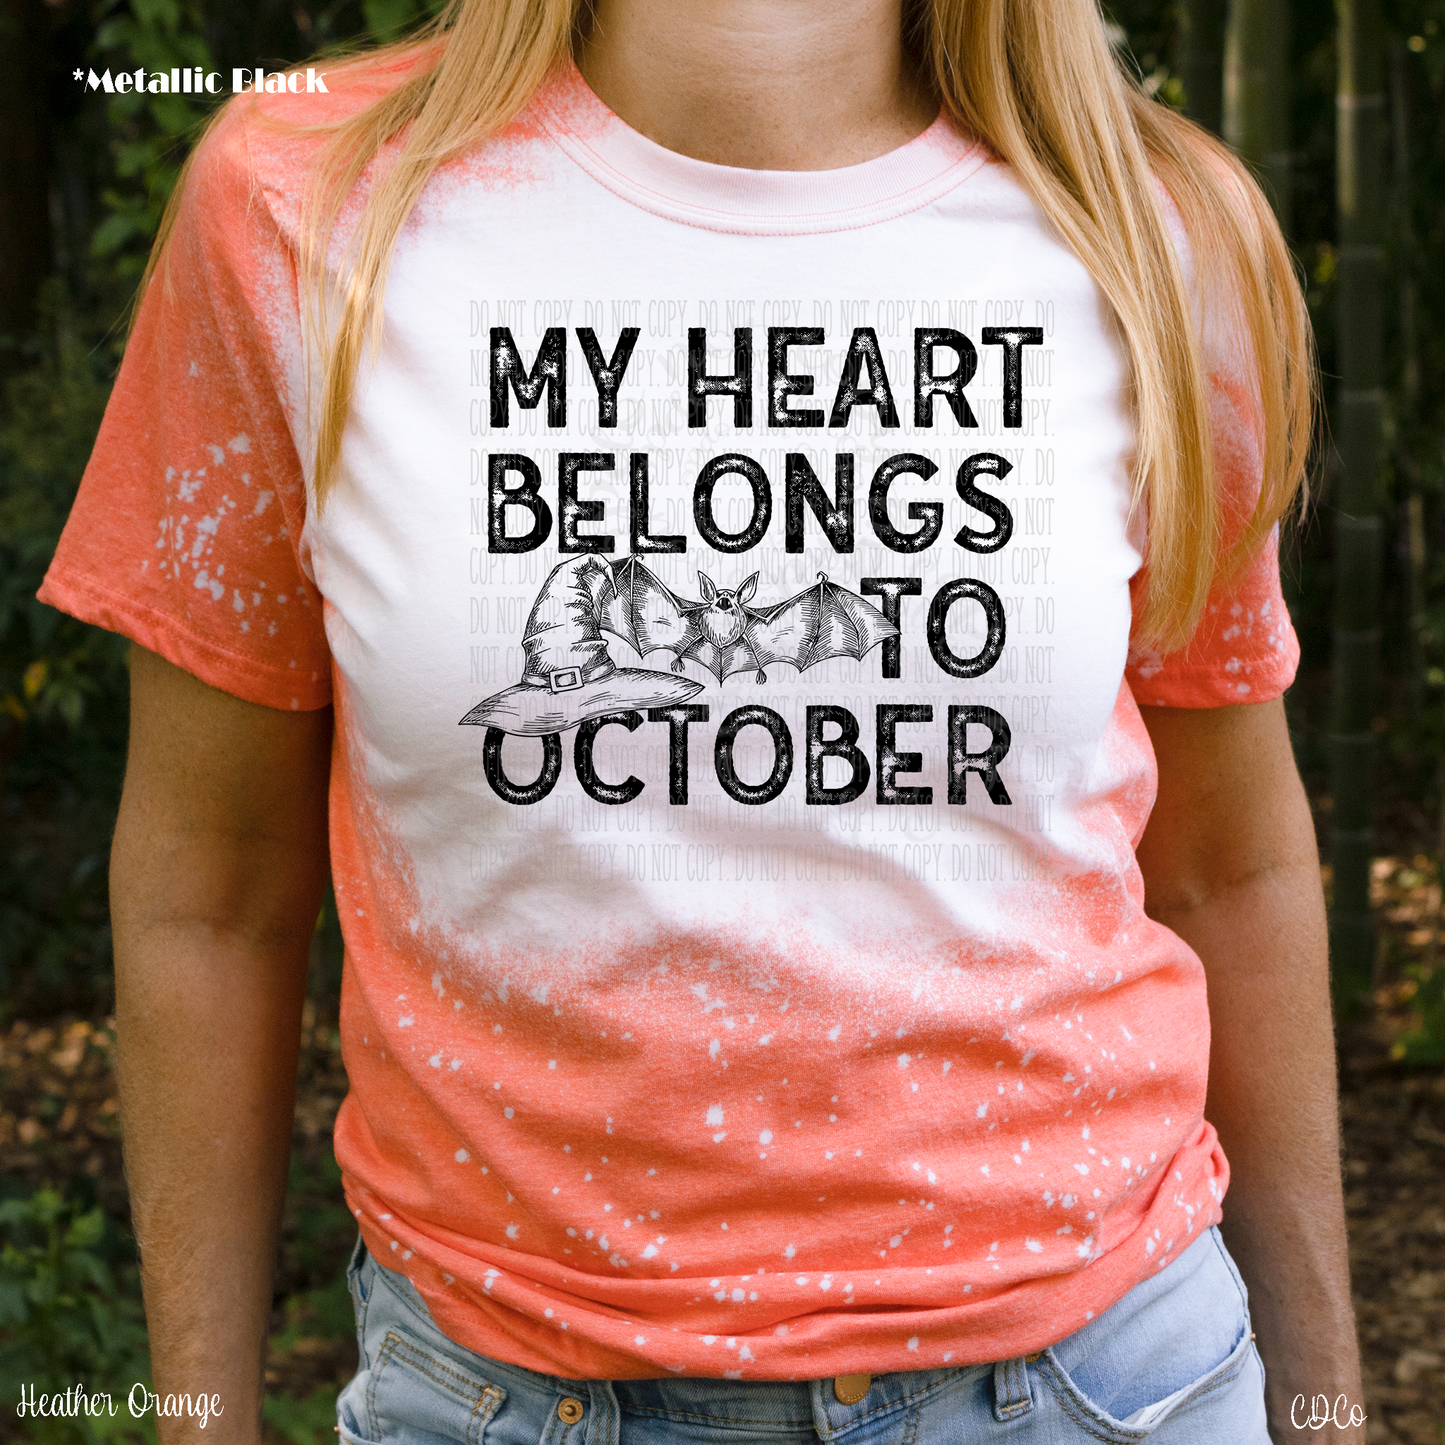 My Heart Belongs to October - METALLIC BLACK (325°)